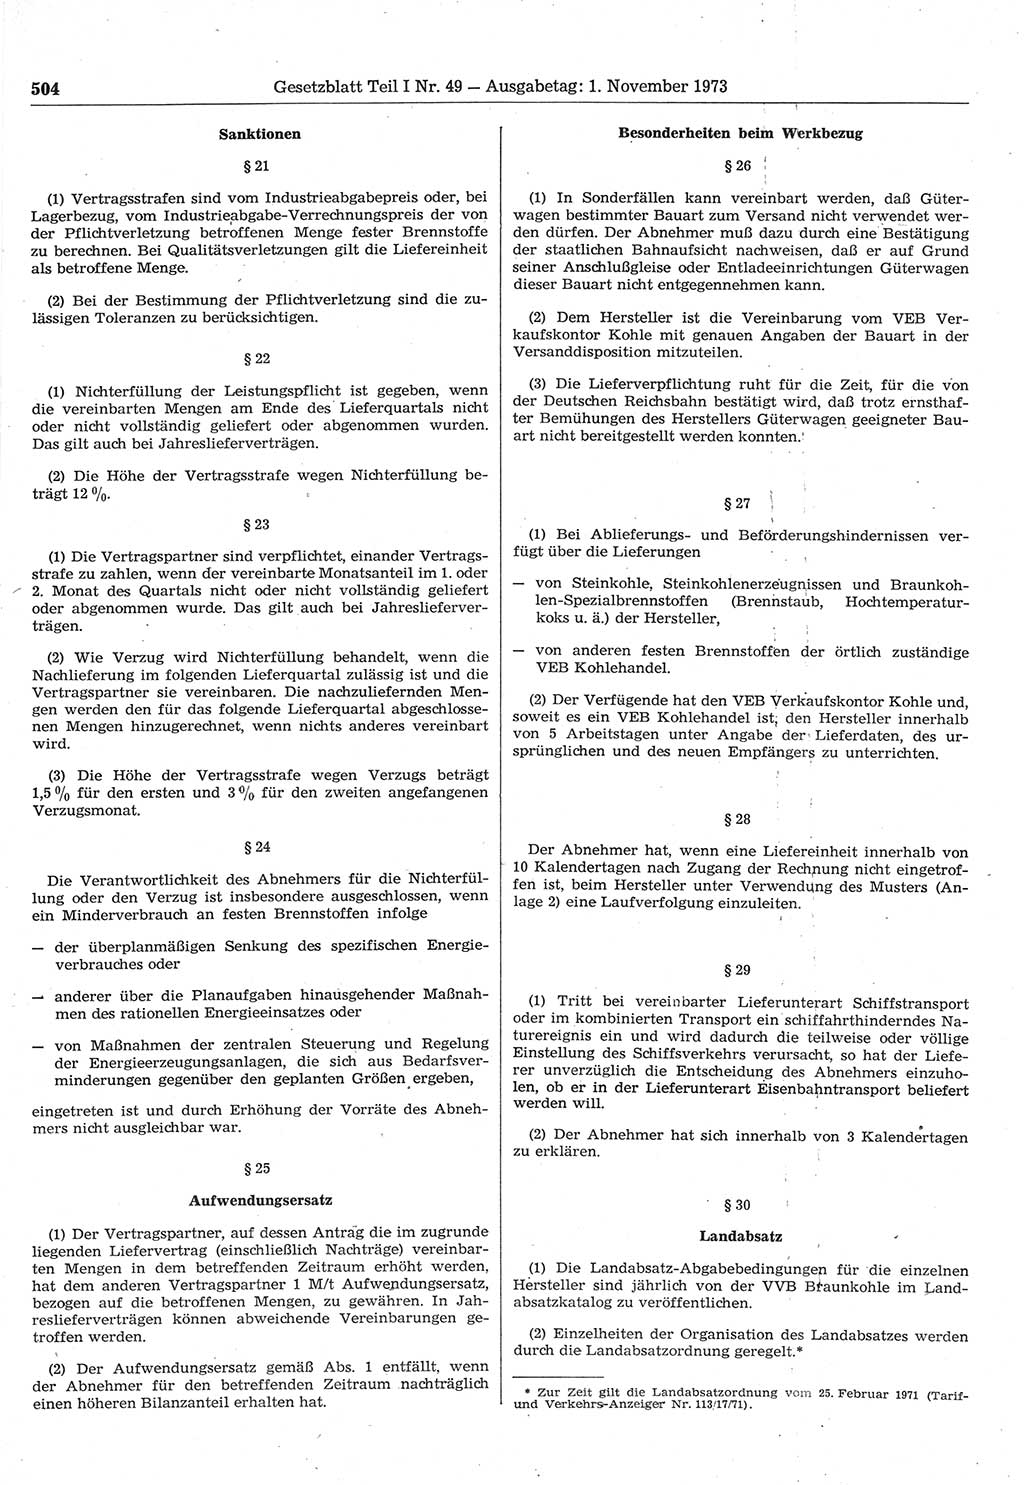 Gesetzblatt (GBl.) der Deutschen Demokratischen Republik (DDR) Teil Ⅰ 1973, Seite 504 (GBl. DDR Ⅰ 1973, S. 504)